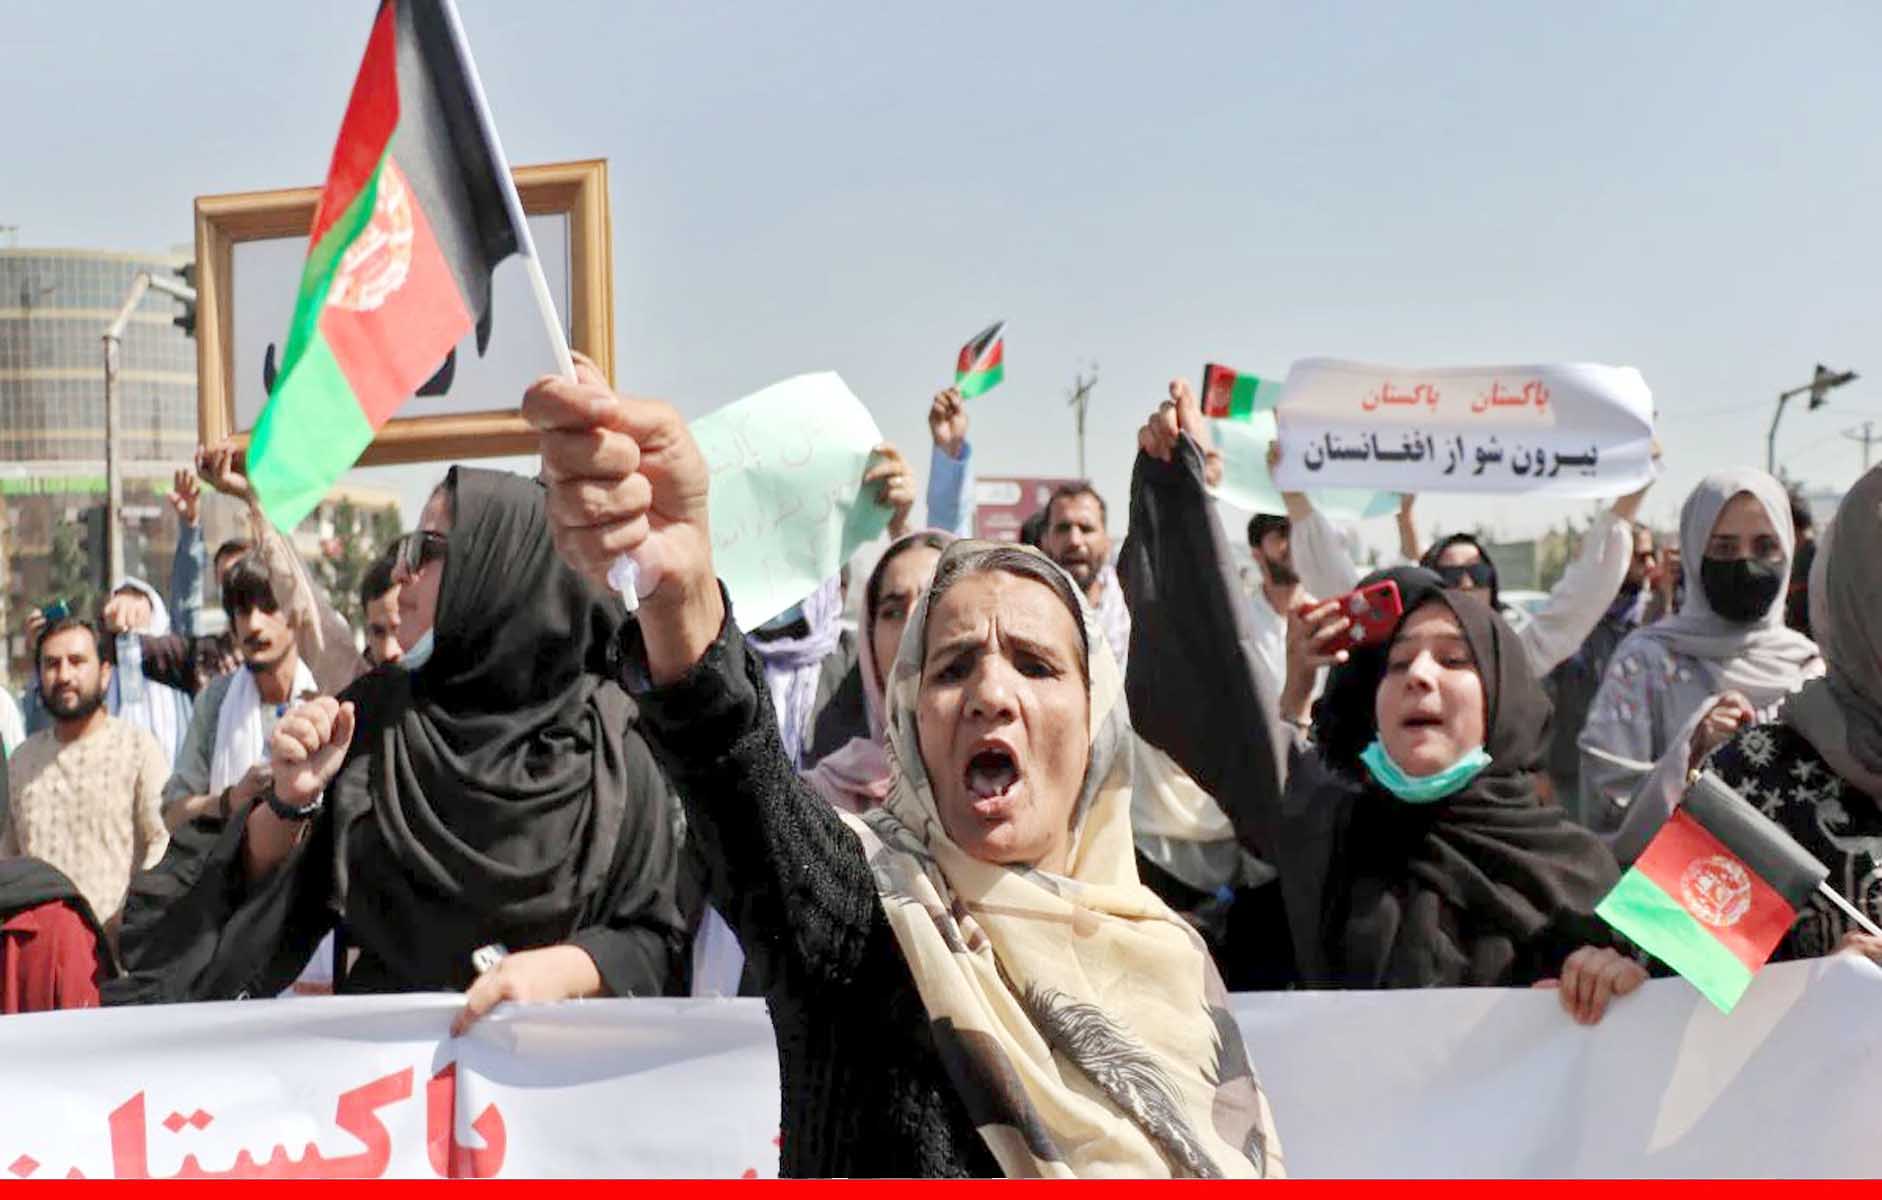 तालिबान सरकार ने प्रदर्शन पर लगाई पाबंदी! कहा- पहले न्‍याय मंत्रालय से अनुमति लेनी होगी